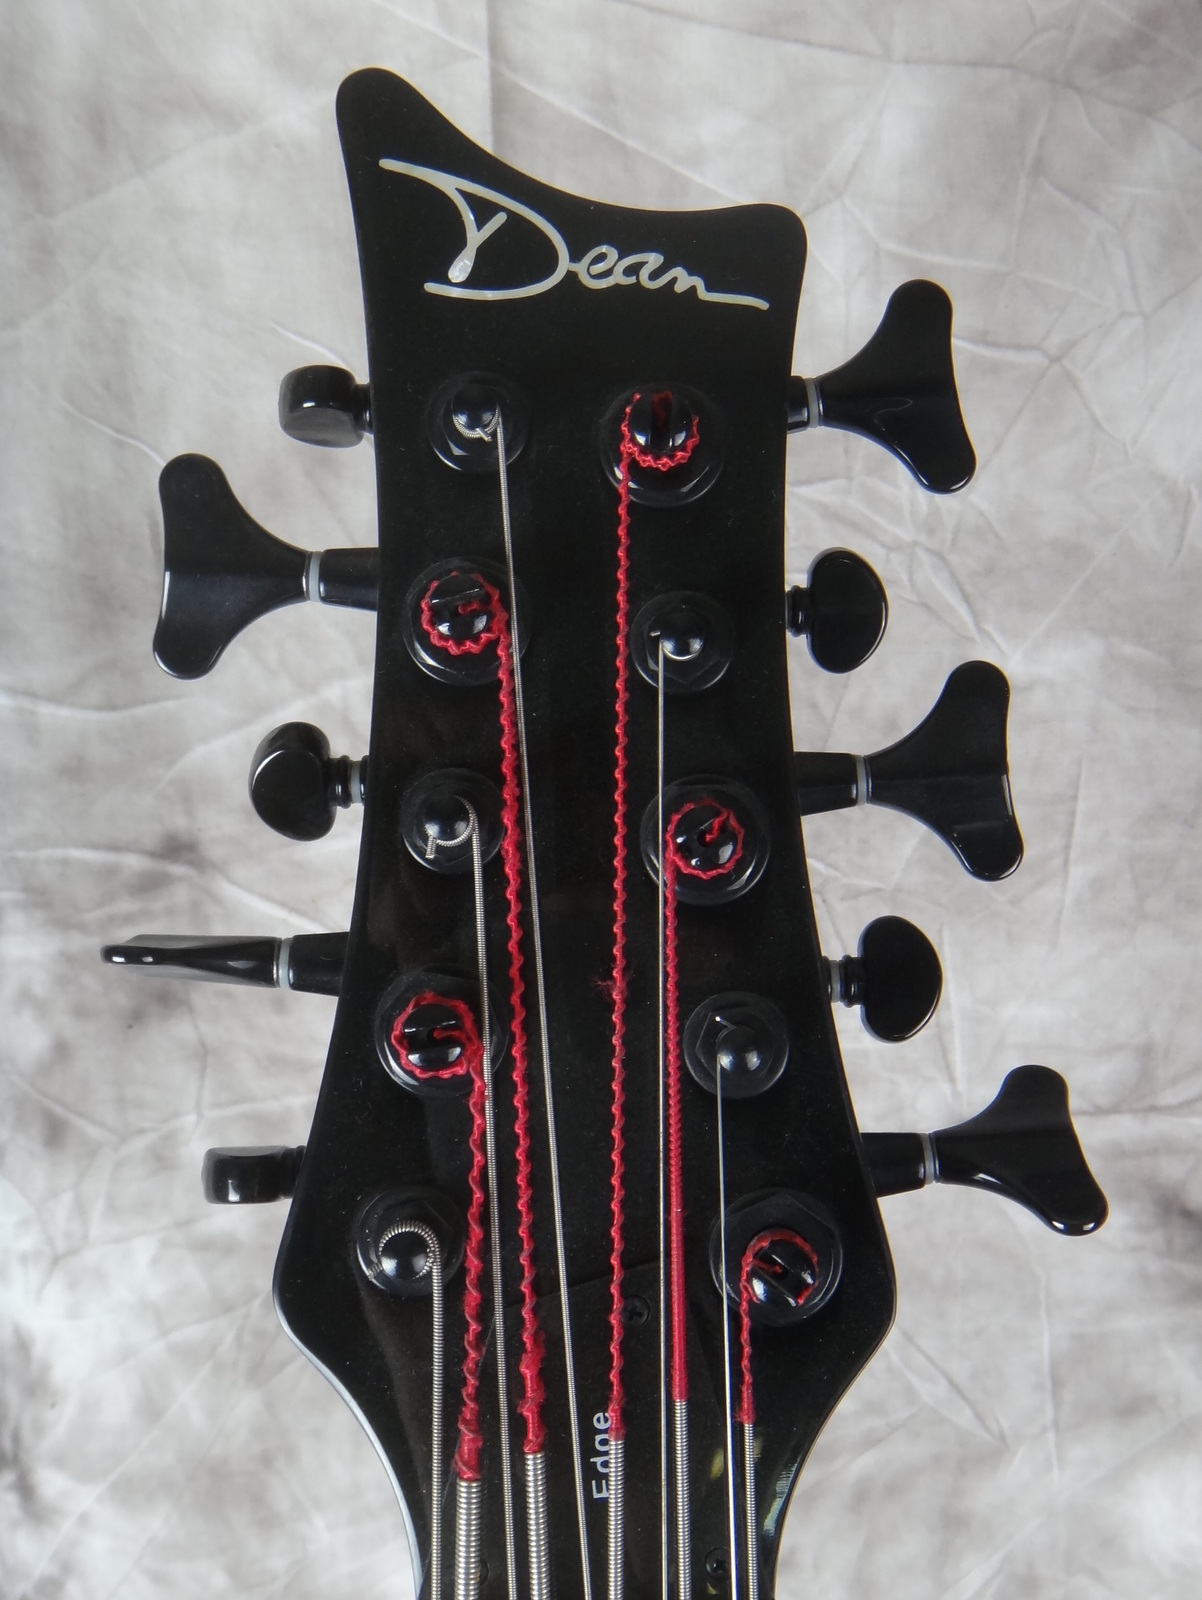 Dean-10-string-bass-004.JPG